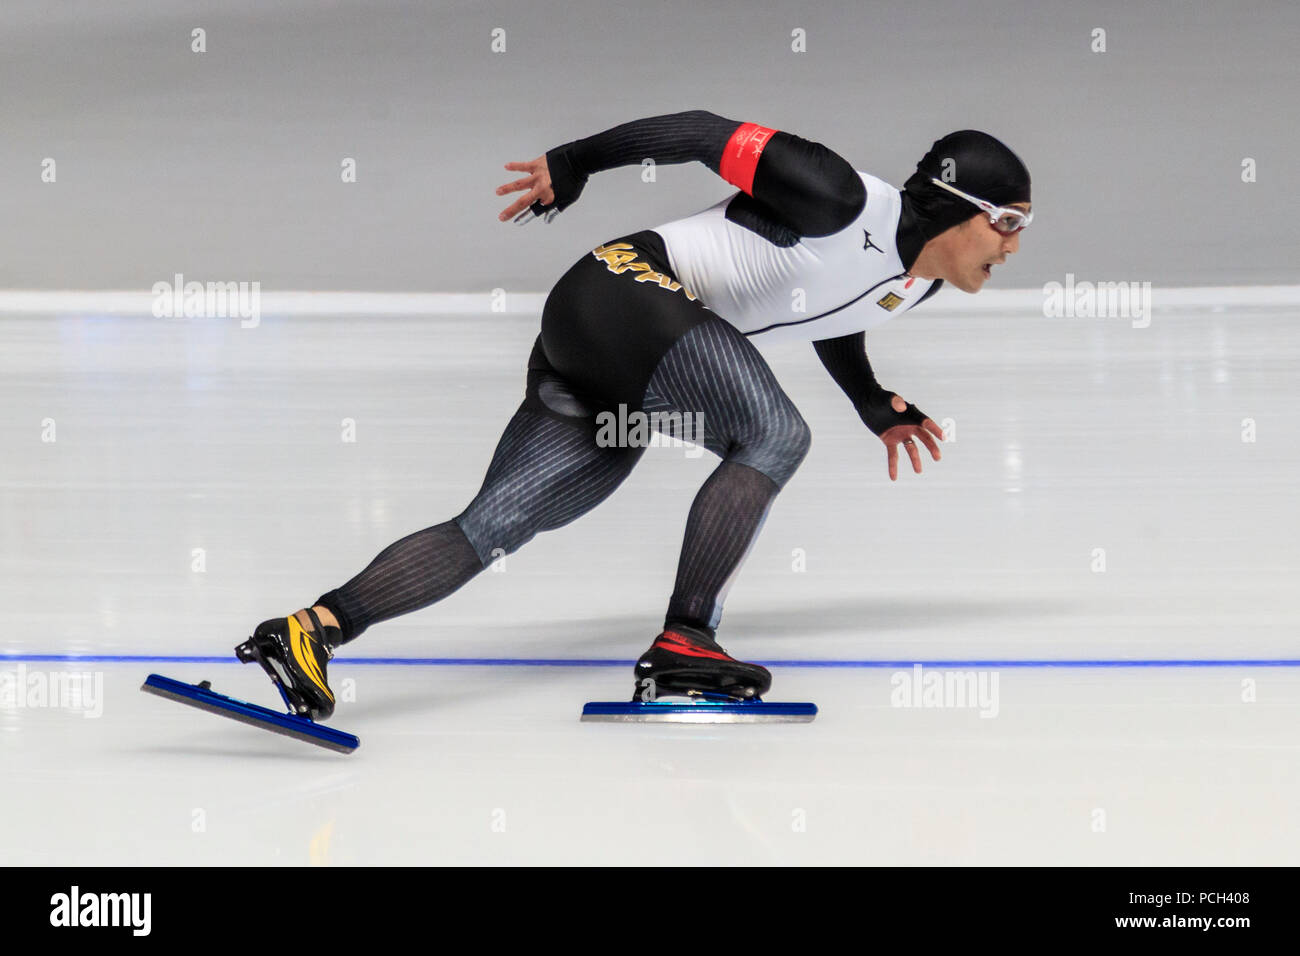 La concurrence sur le patinage de vitesse - Mens' 500m aux Jeux Olympiques d'hiver de PyeongChang 2018 Banque D'Images